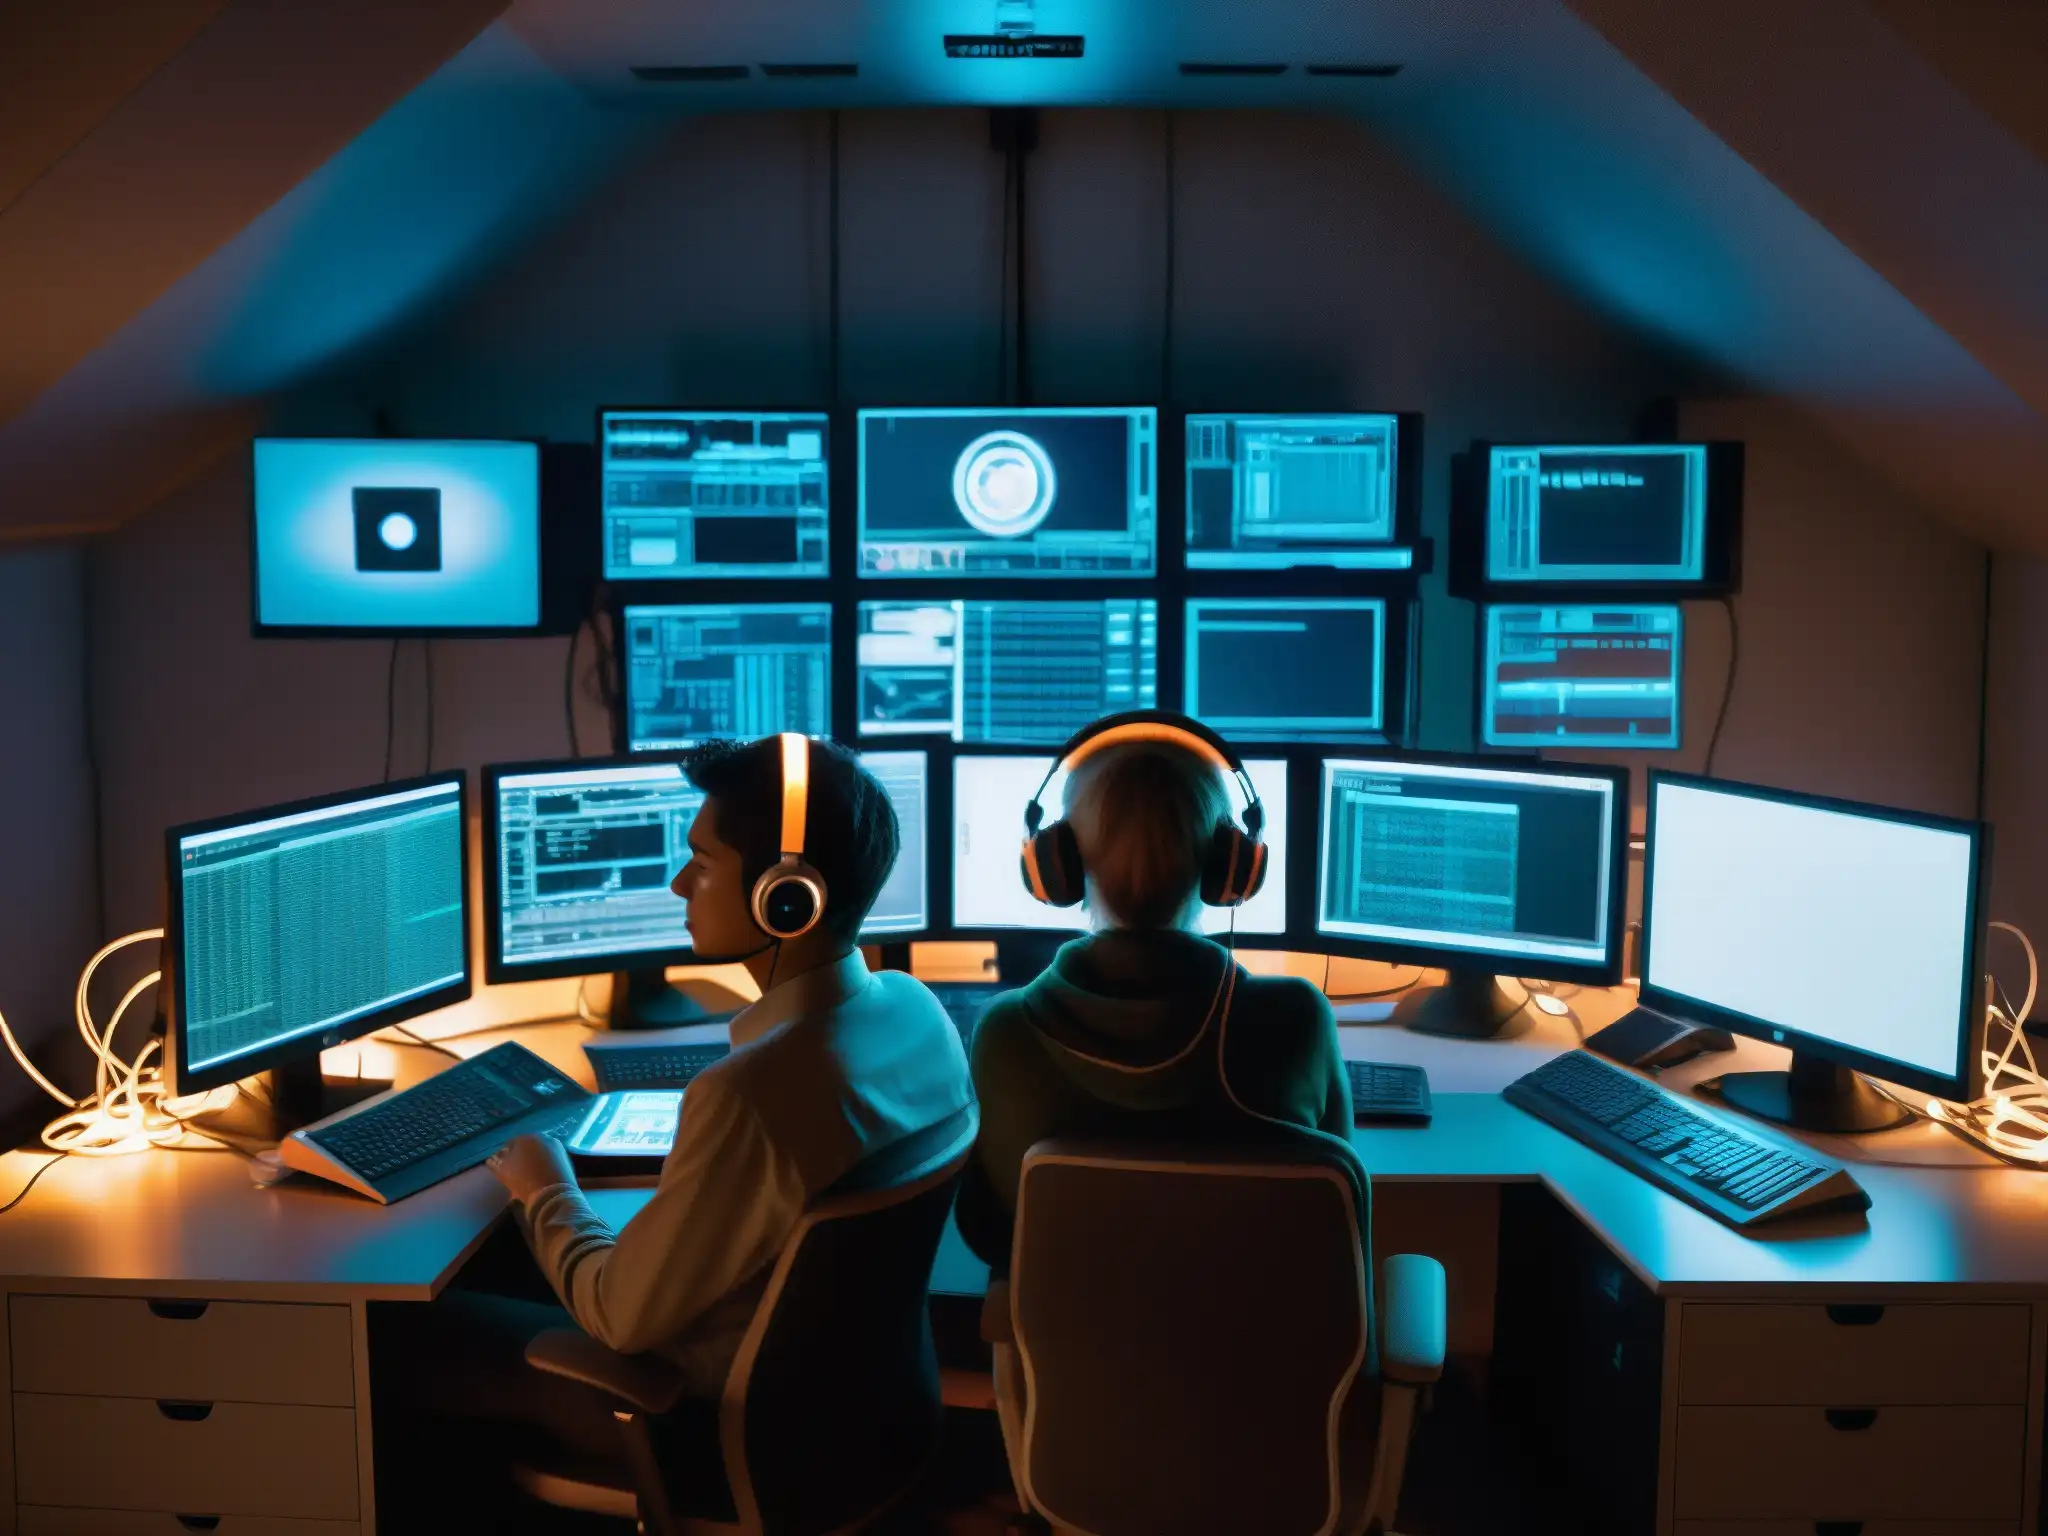 Un enigmático espacio repleto de monitores y cables, donde se percibe la intensa labor de individuos inmersos en sus dispositivos digitales